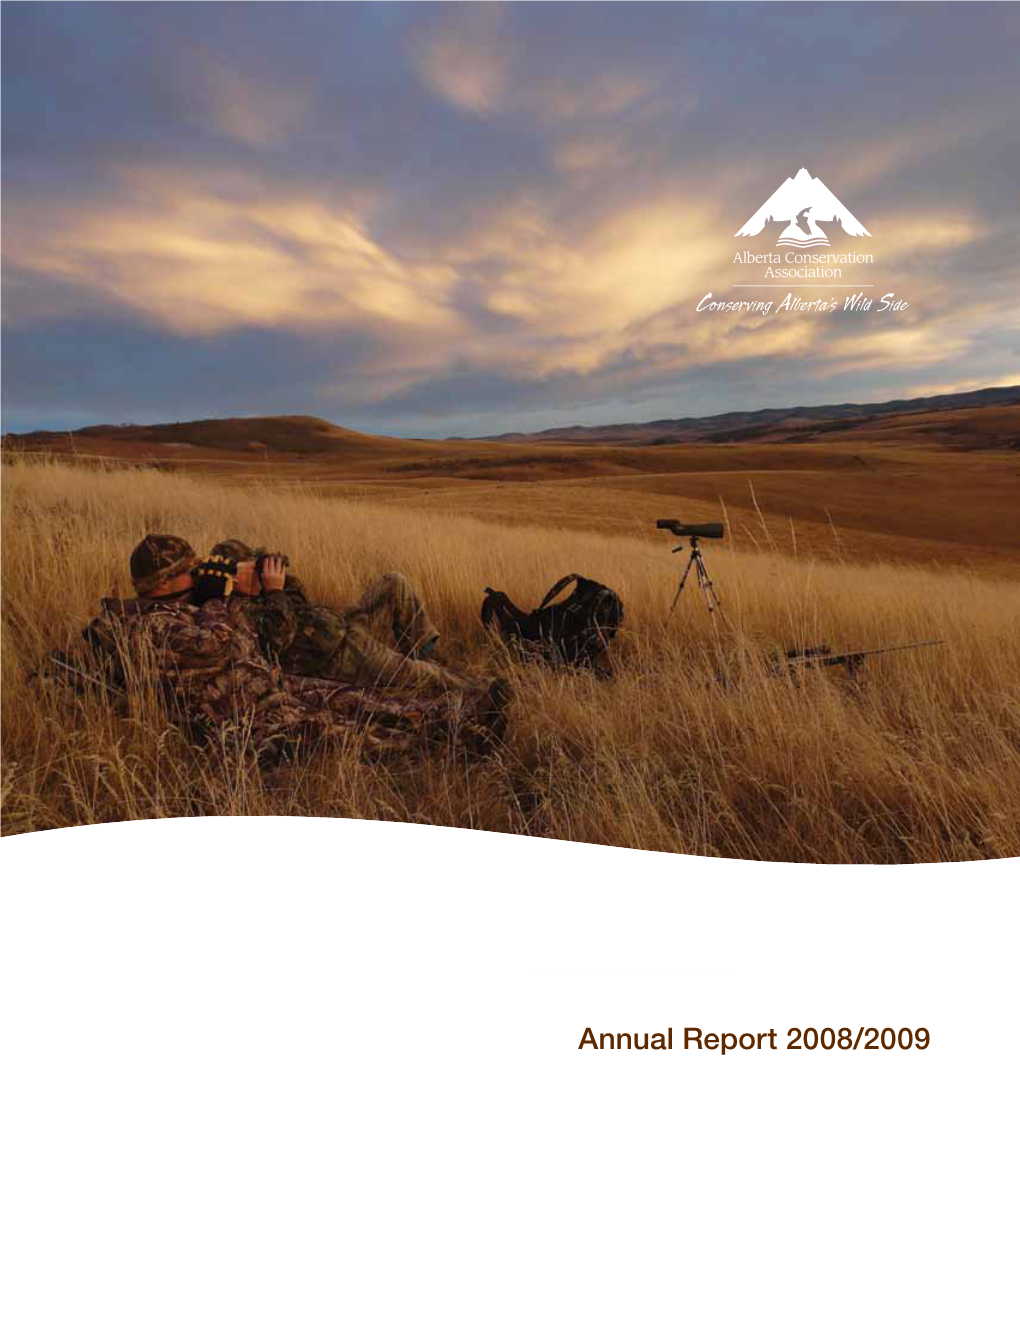 Annual Report 2008/2009 Annual Report 2008/2009